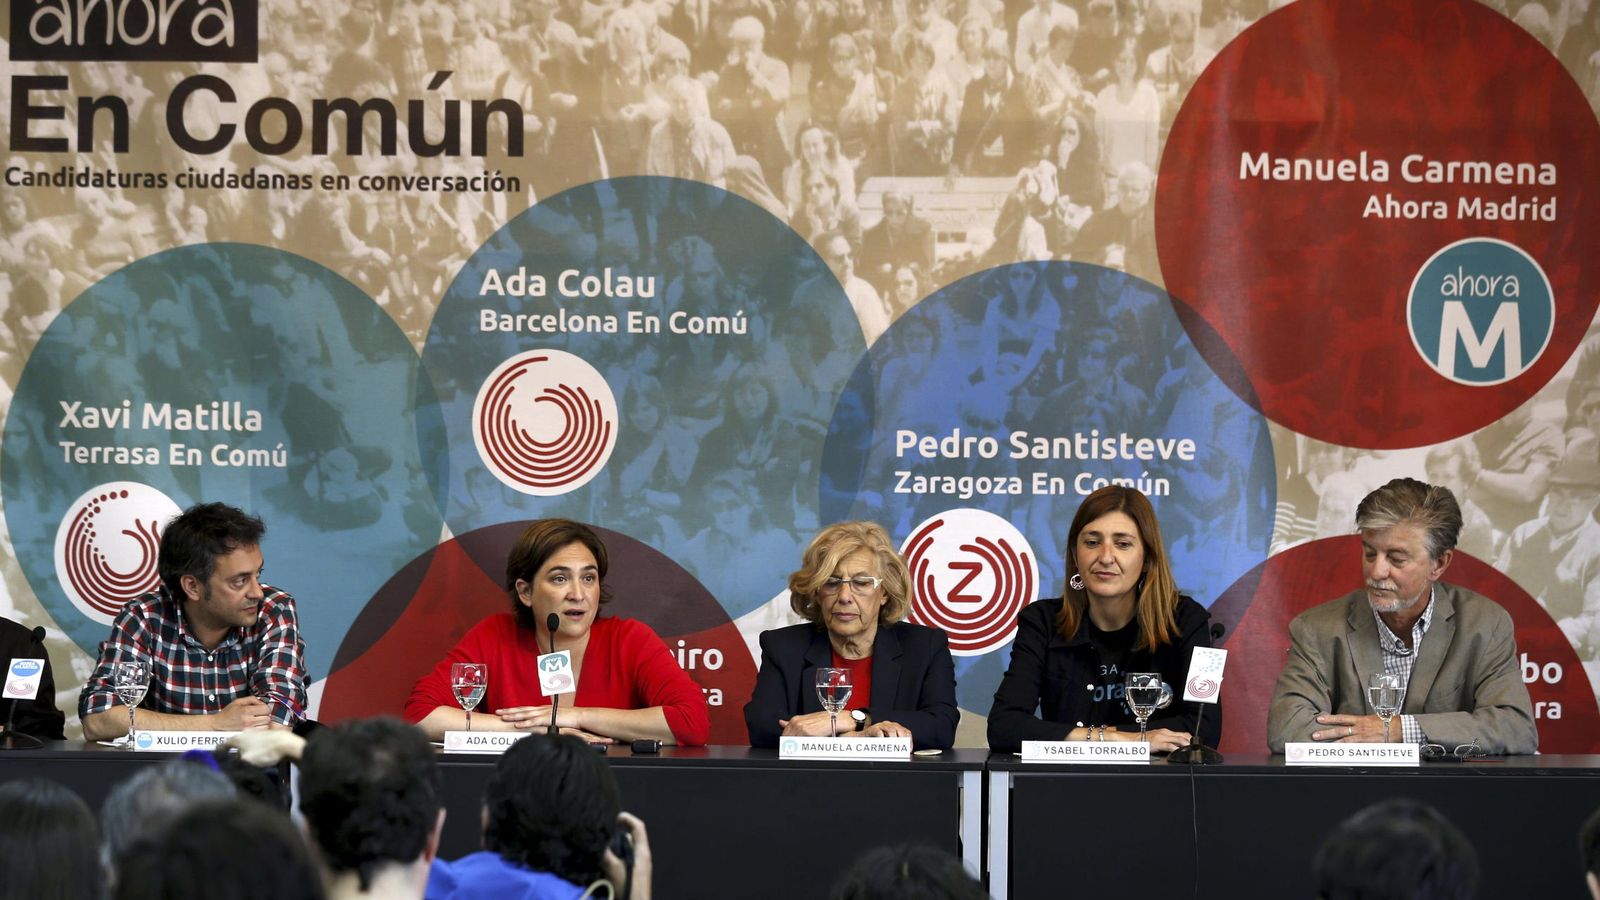 Foto: Presentación de la red de candidaturas ciudadanas a las pasadas elecciones municipales.